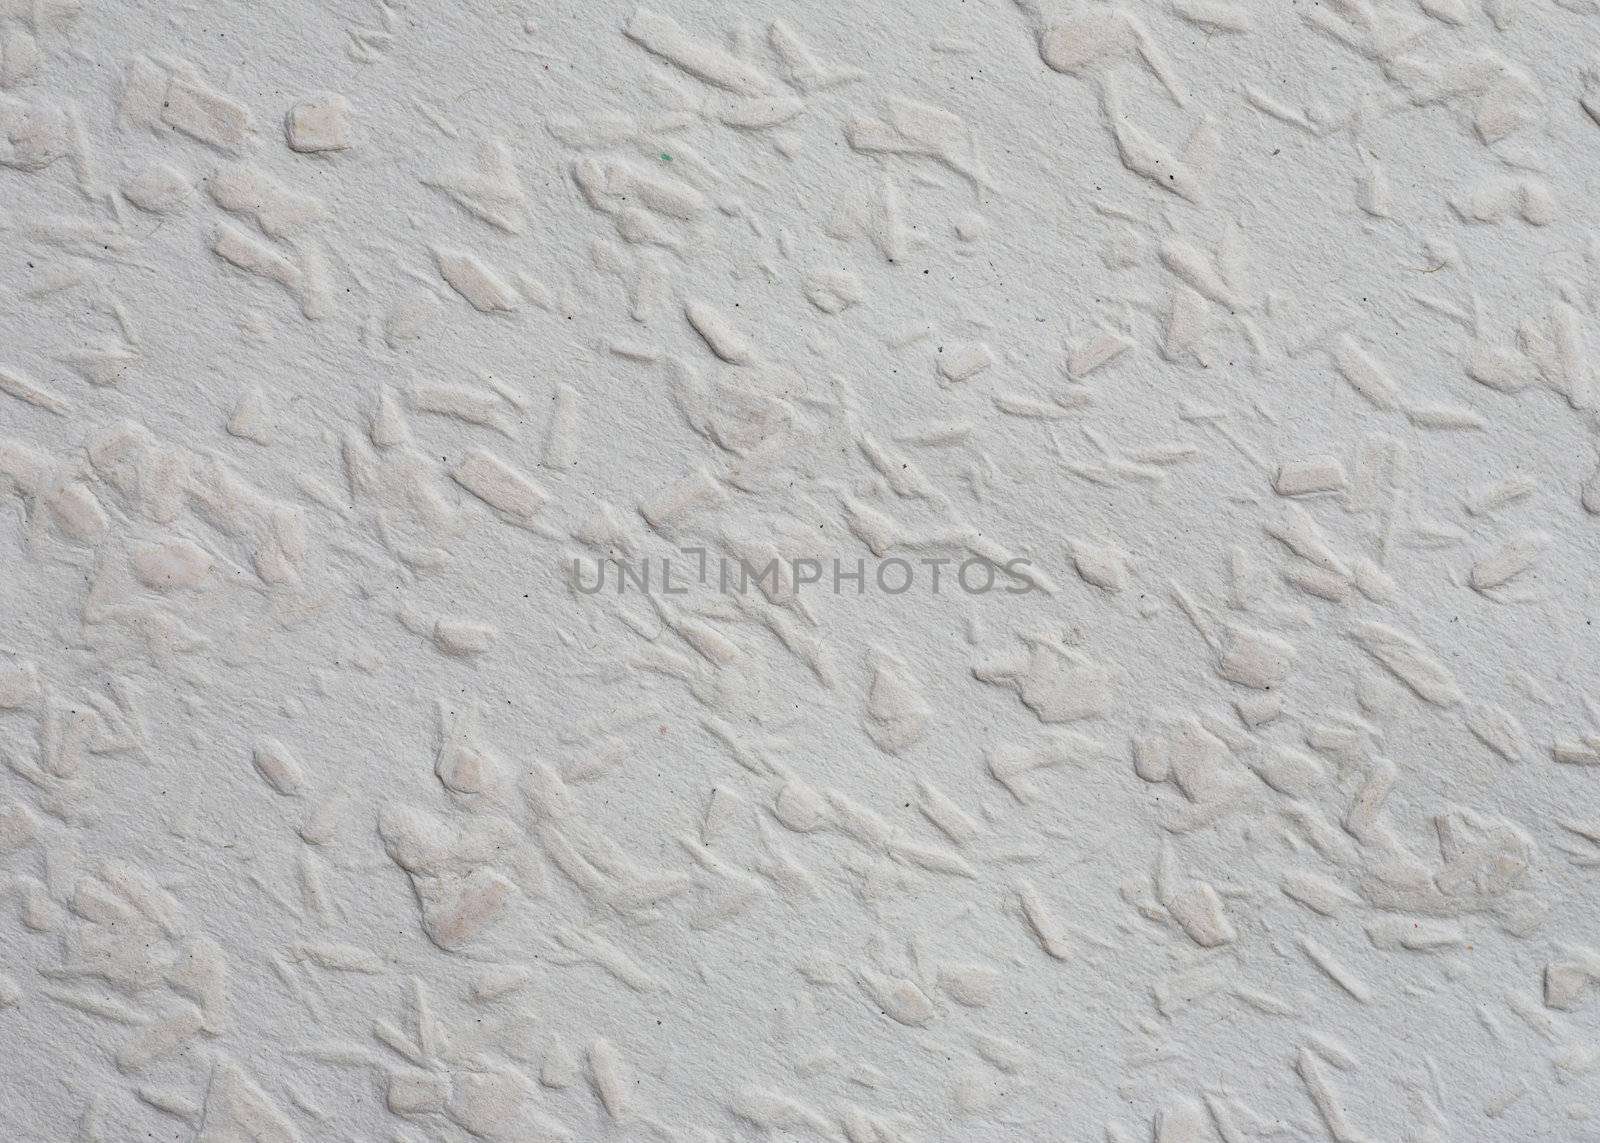 Textured surface of a sheet of woodchip wallpaper